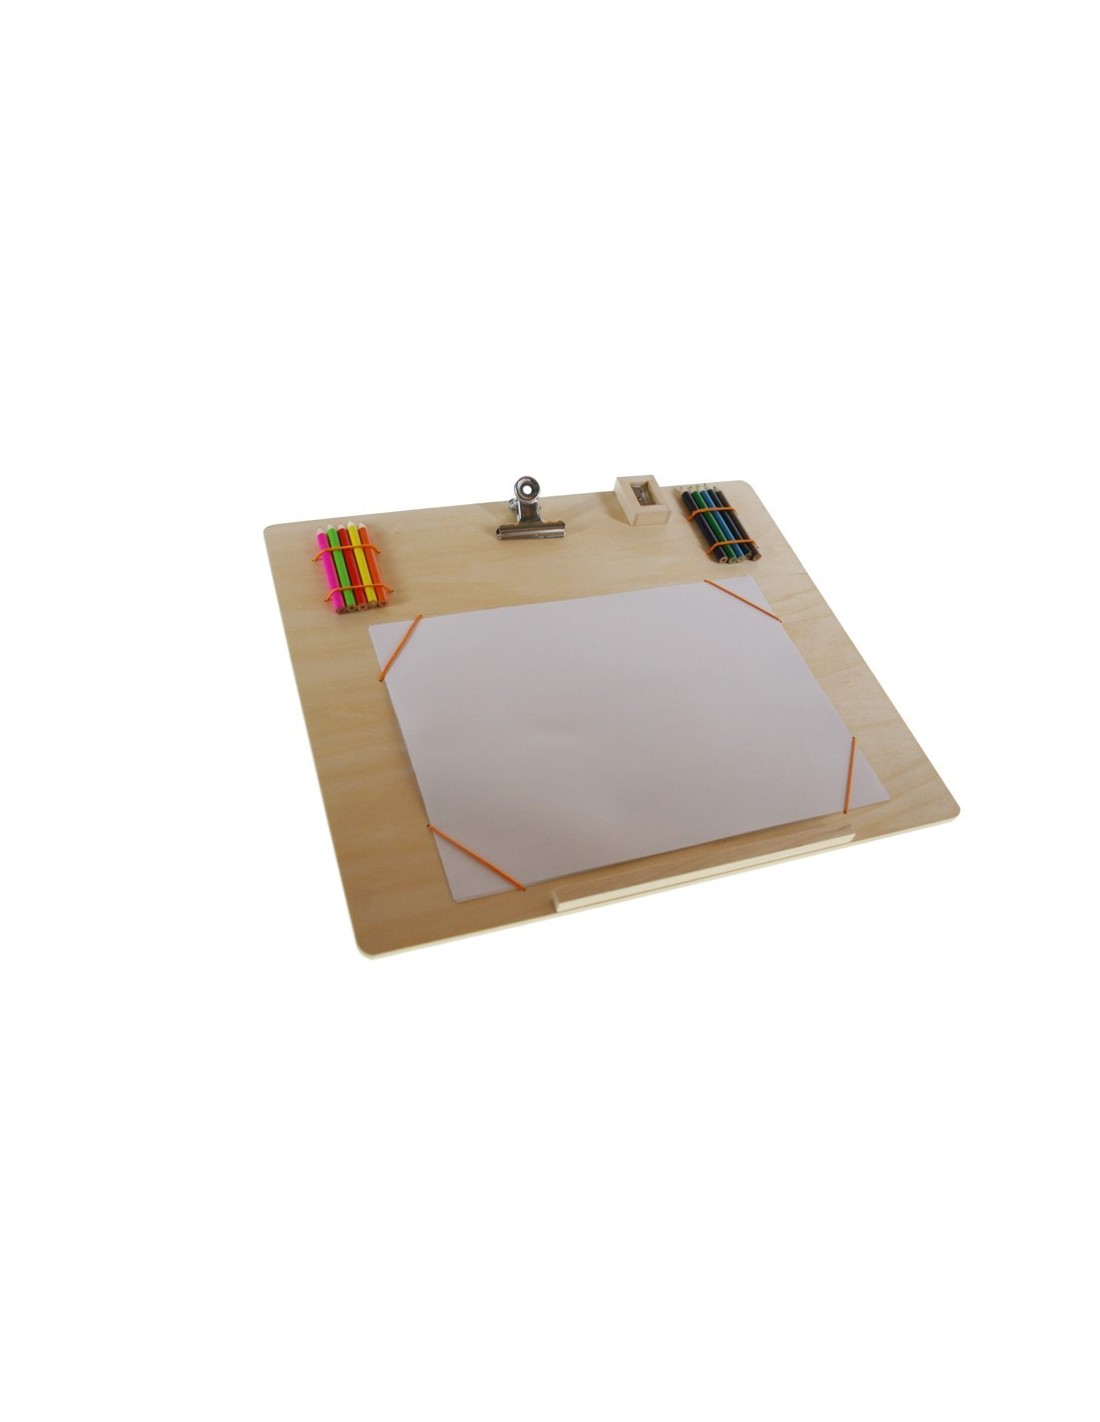 Tabla de madera laminada para dibujar con accesorios manualidades creativas para niño niña